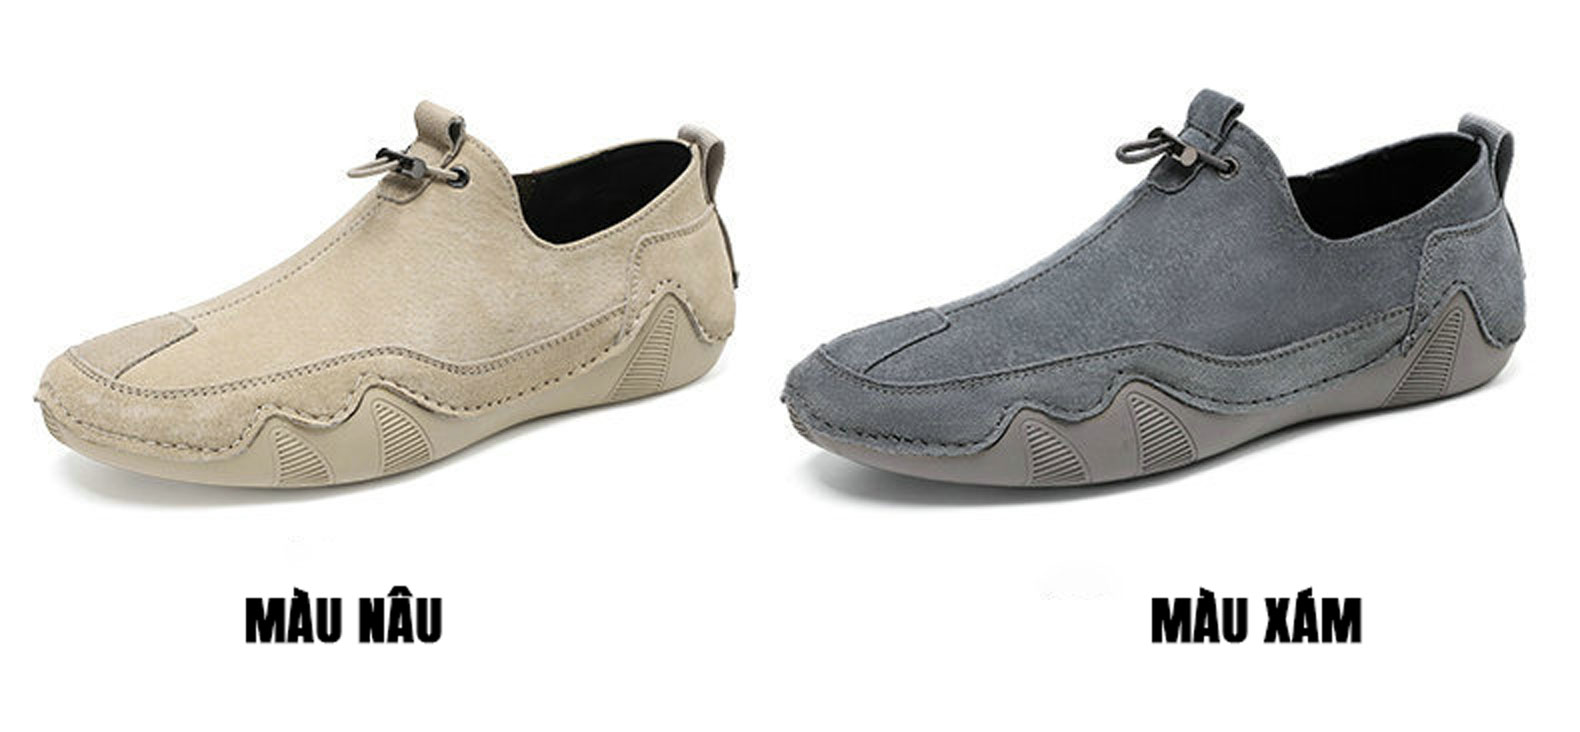 Giày da nam TM-RK49 thiết kế 2 màu sang trọng dễ dàng phối đồ